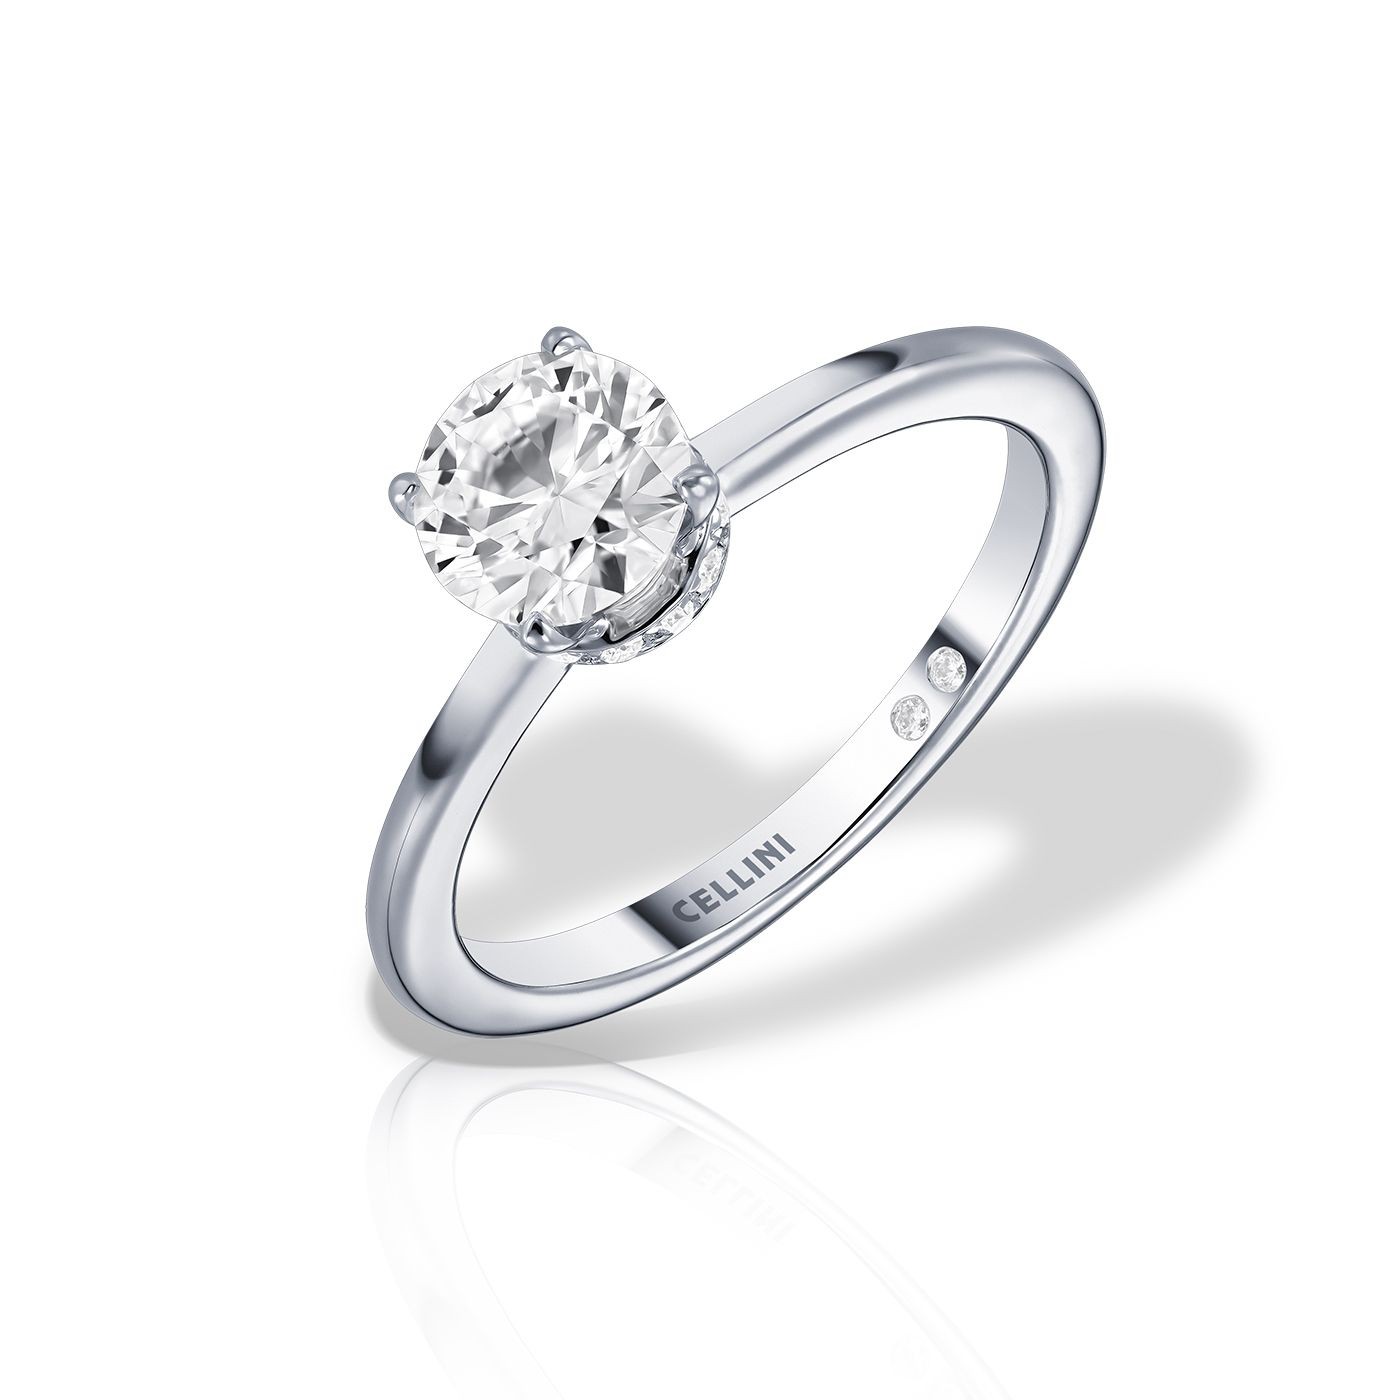 Inel de logodna INFINITY cu diamante de 0.34 carate, aur alb de 18K